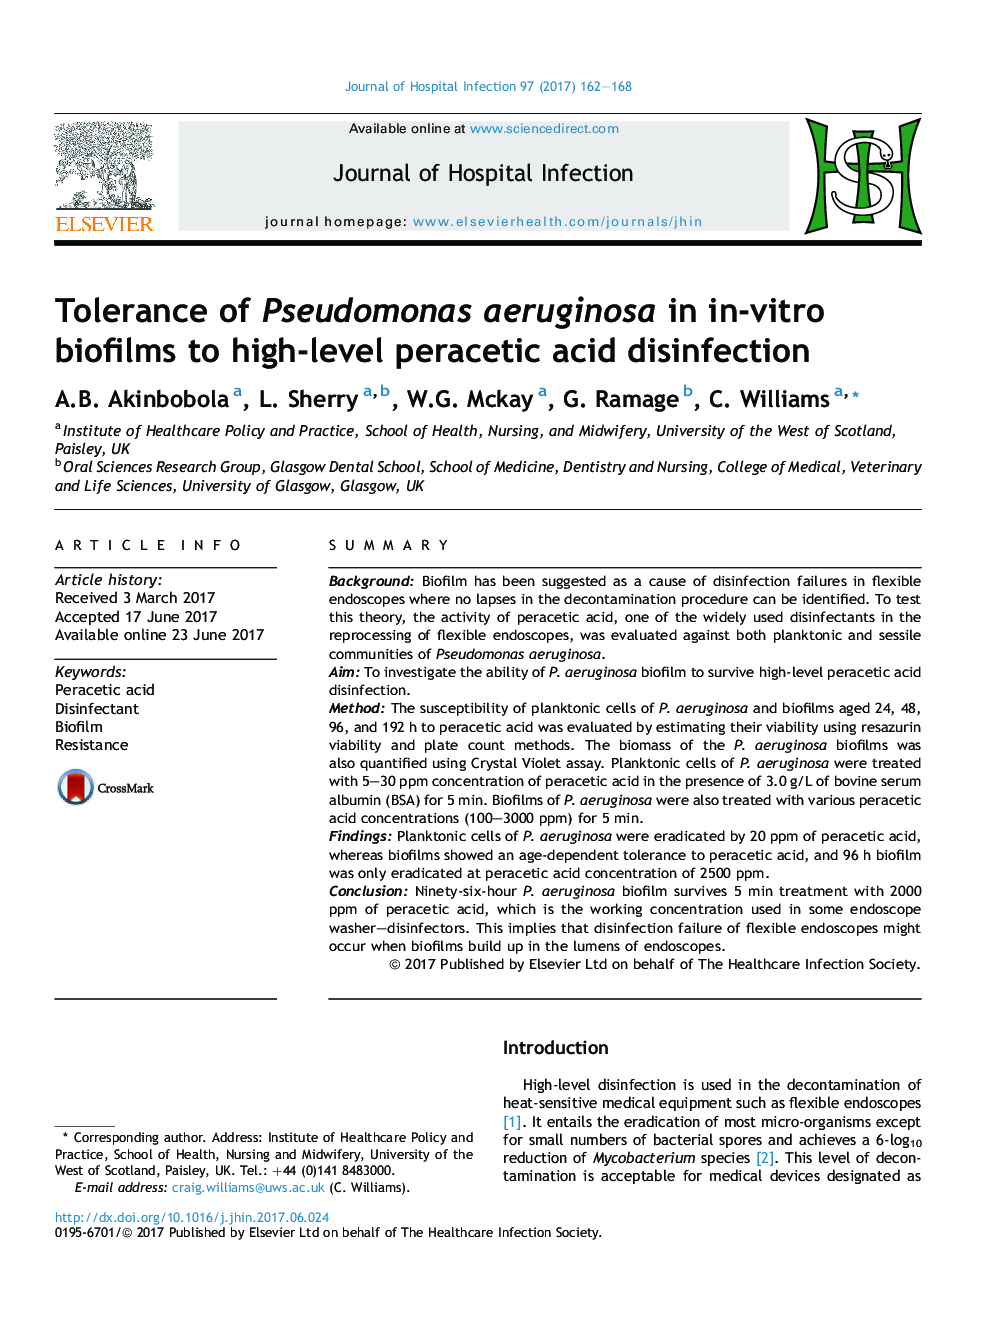 Tolerance of Pseudomonas aeruginosa in in-vitro biofilms to high-level peracetic acid disinfection